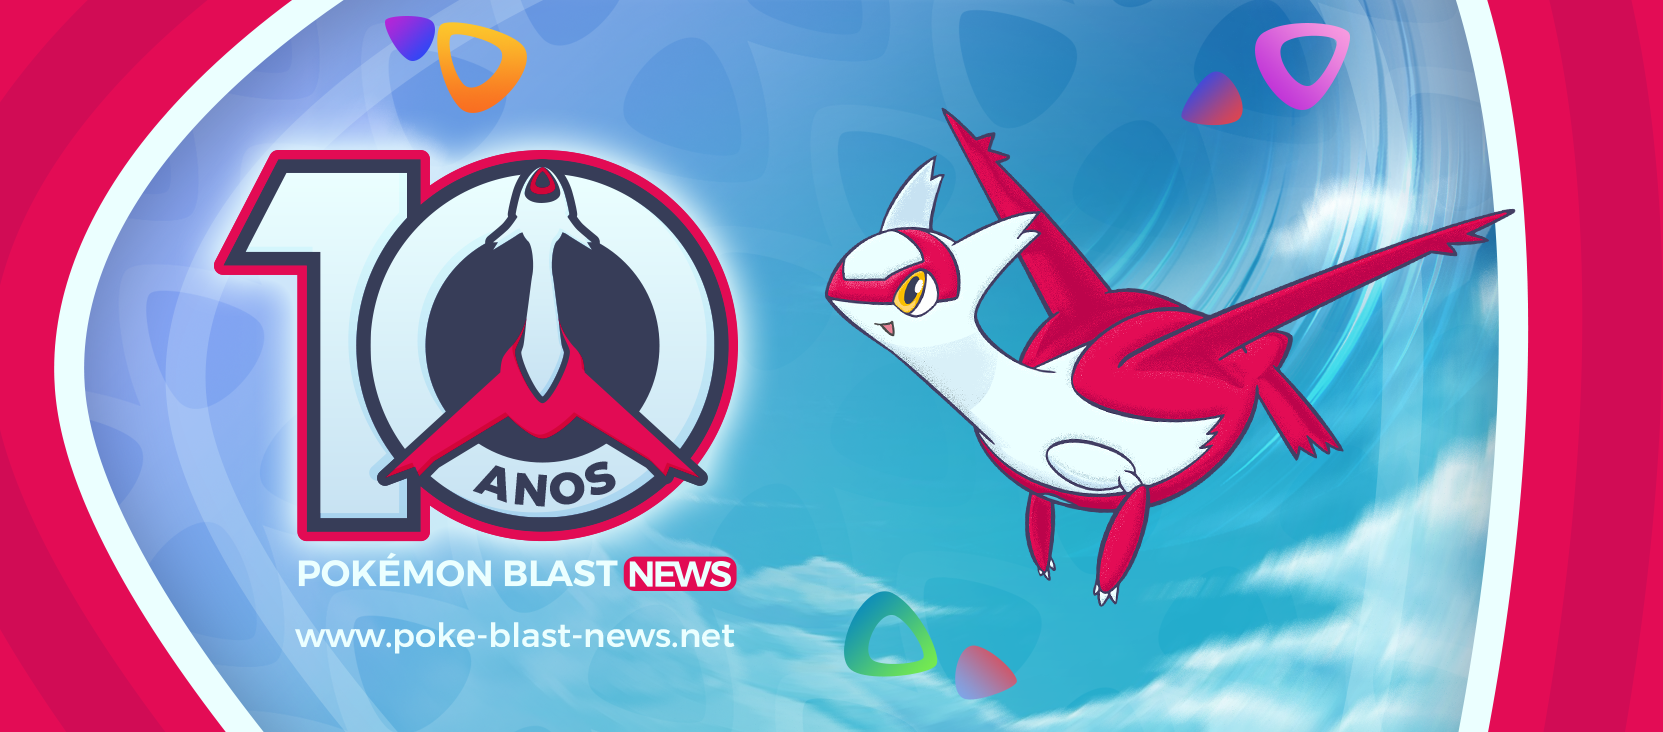 Pokémon Blast News